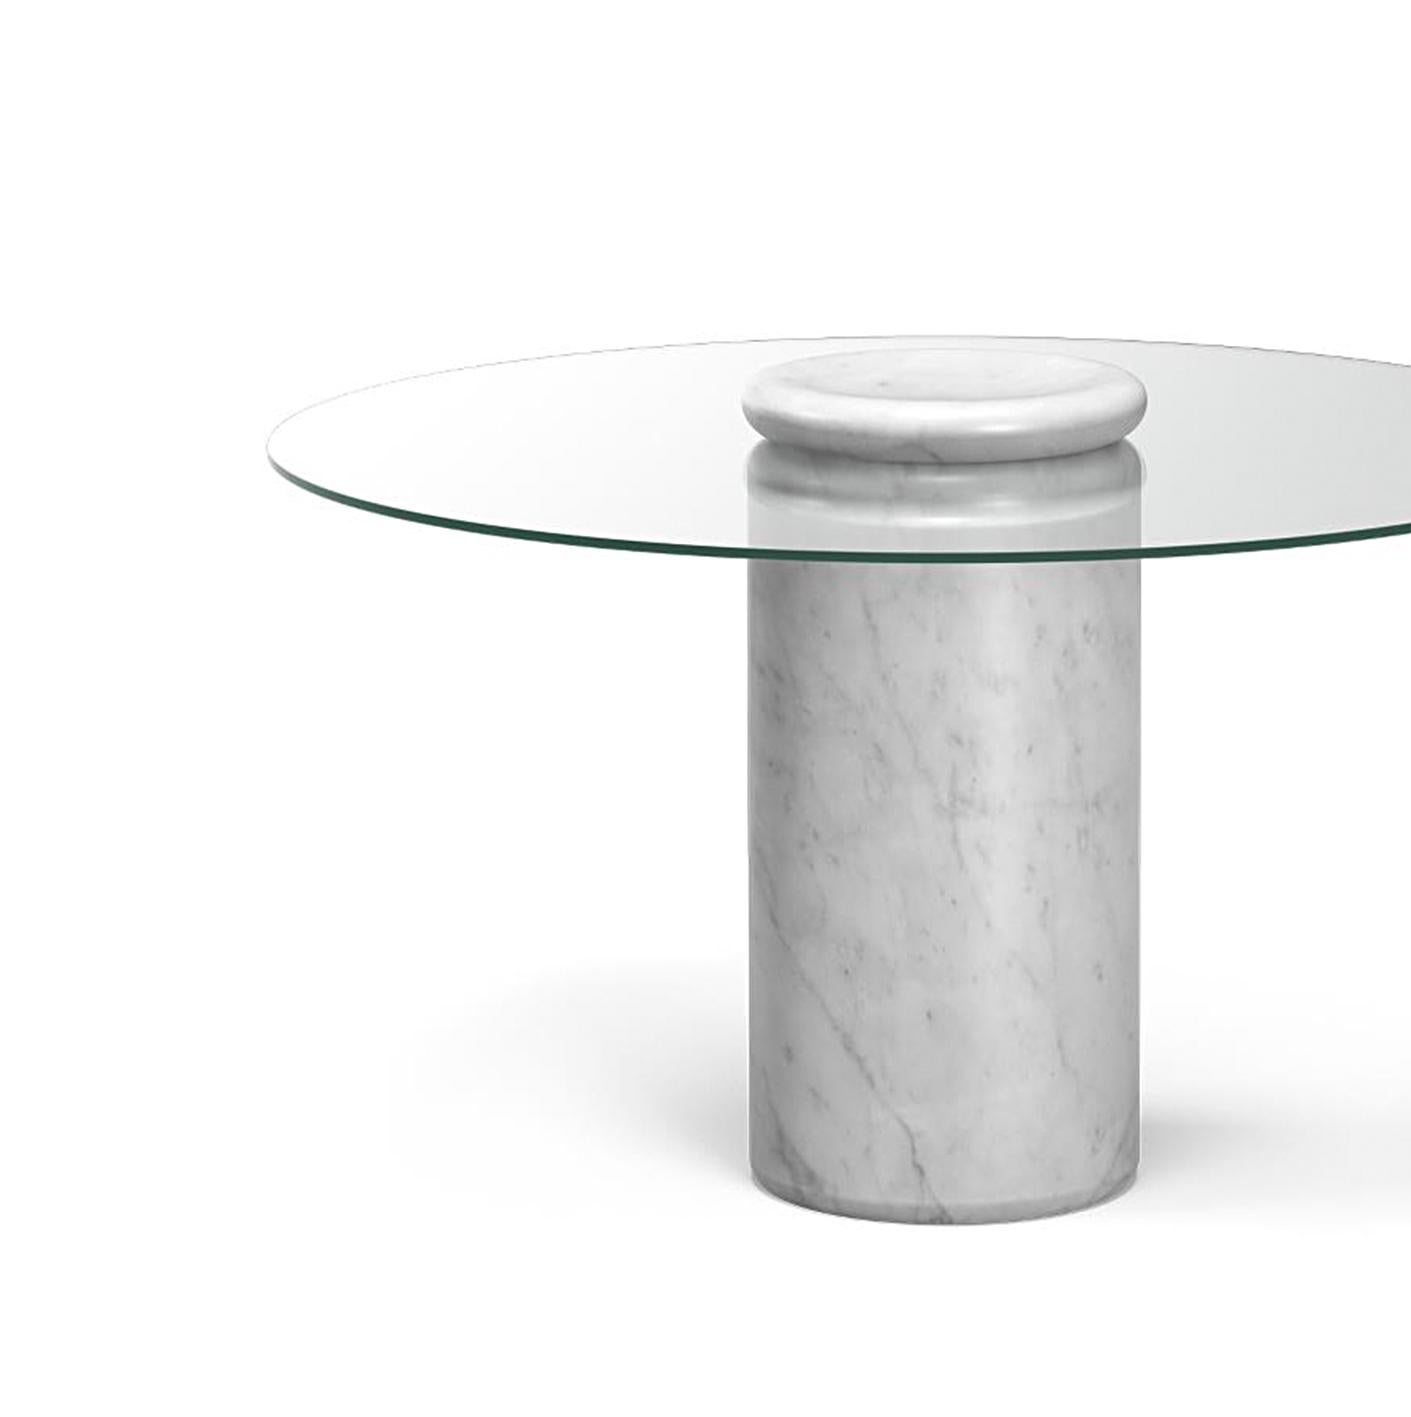 Tisch entworfen von Angelo Mangiarotti 

Castore ist ein Tisch aus Glas und Marmor des italienischen Architekten, Bildhauers und Designers Angelo Mangiarotti. Das 1975 für Sorgente dei Mobili entworfene, unverwechselbare Design wird nun von Karakter